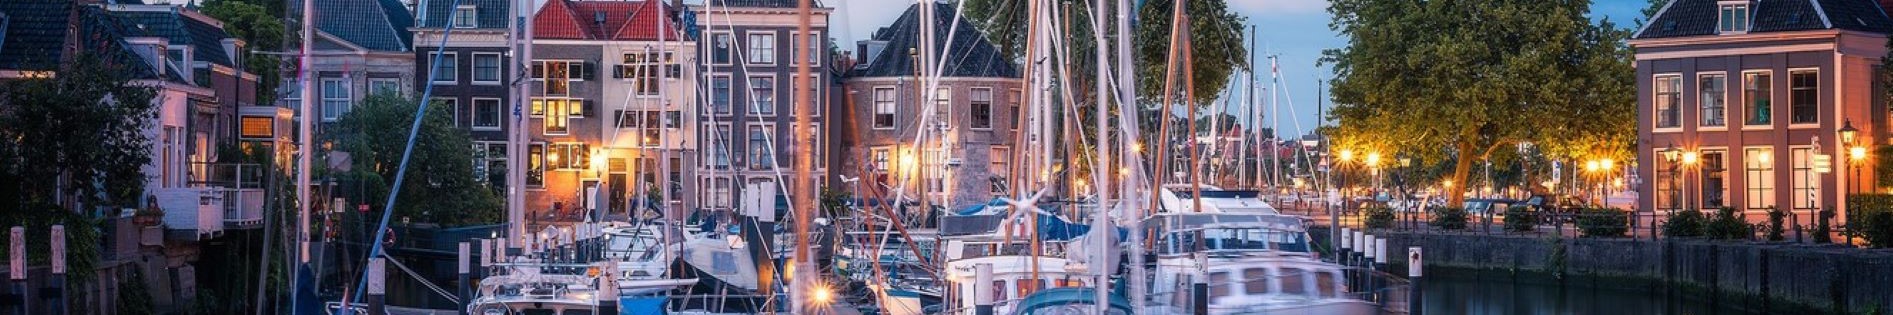 Dordrecht 